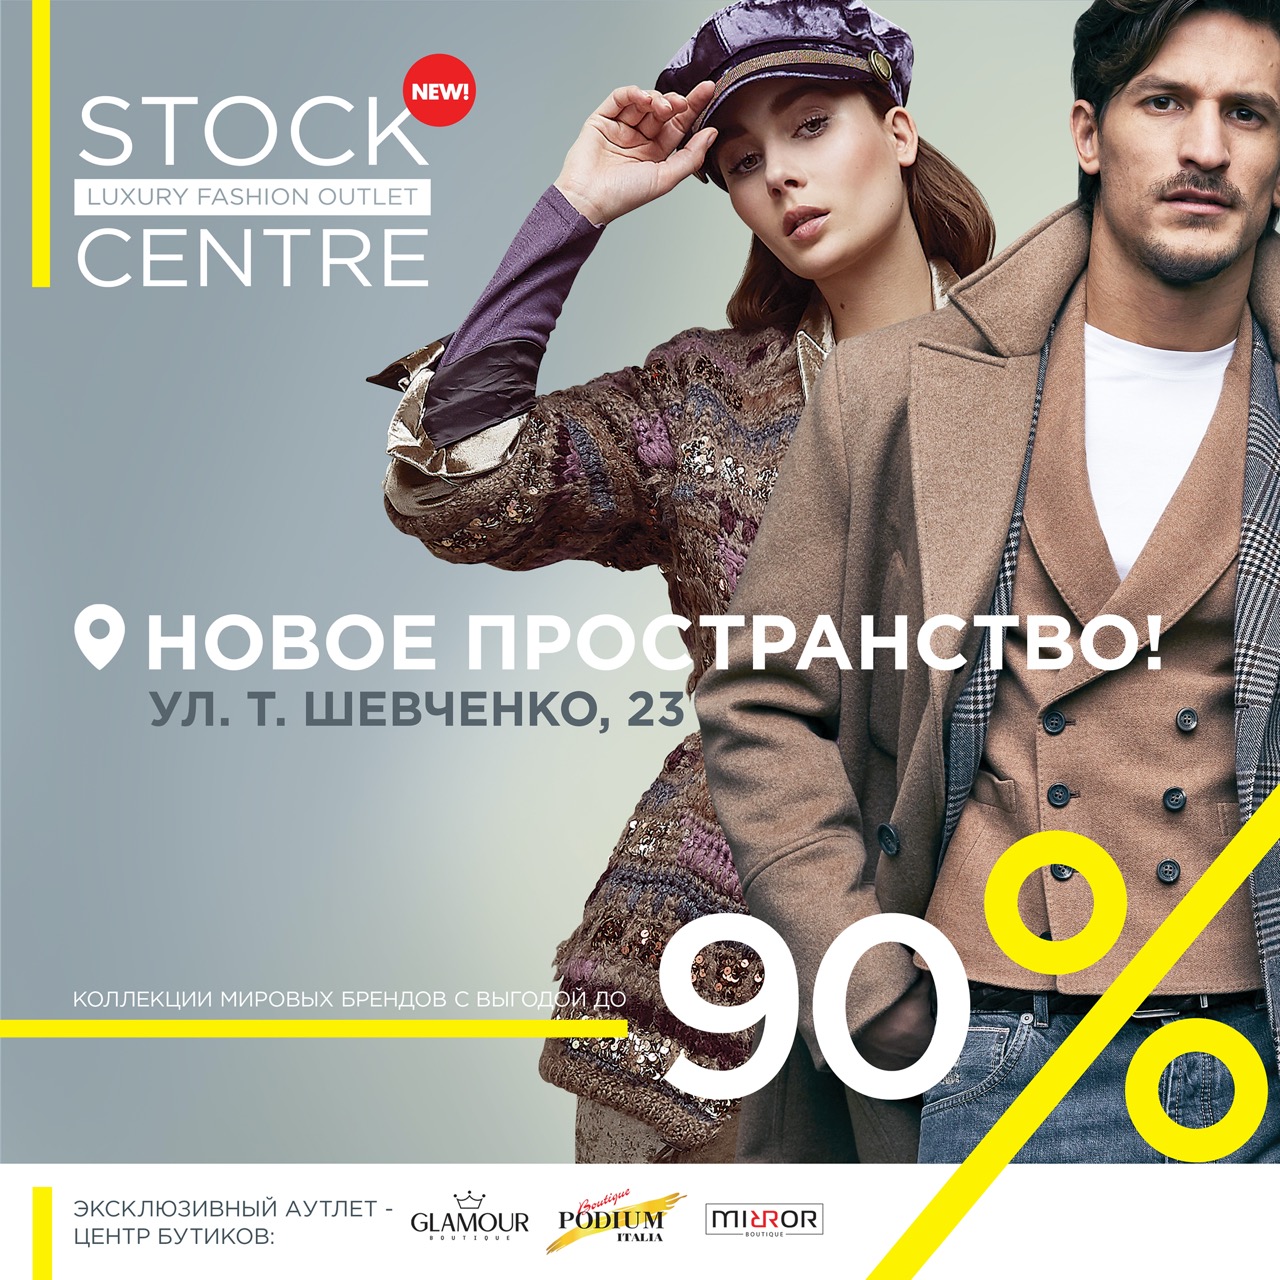 В Ташкенте состоится открытие нового Stock Centre Luxury Fashion Outlet